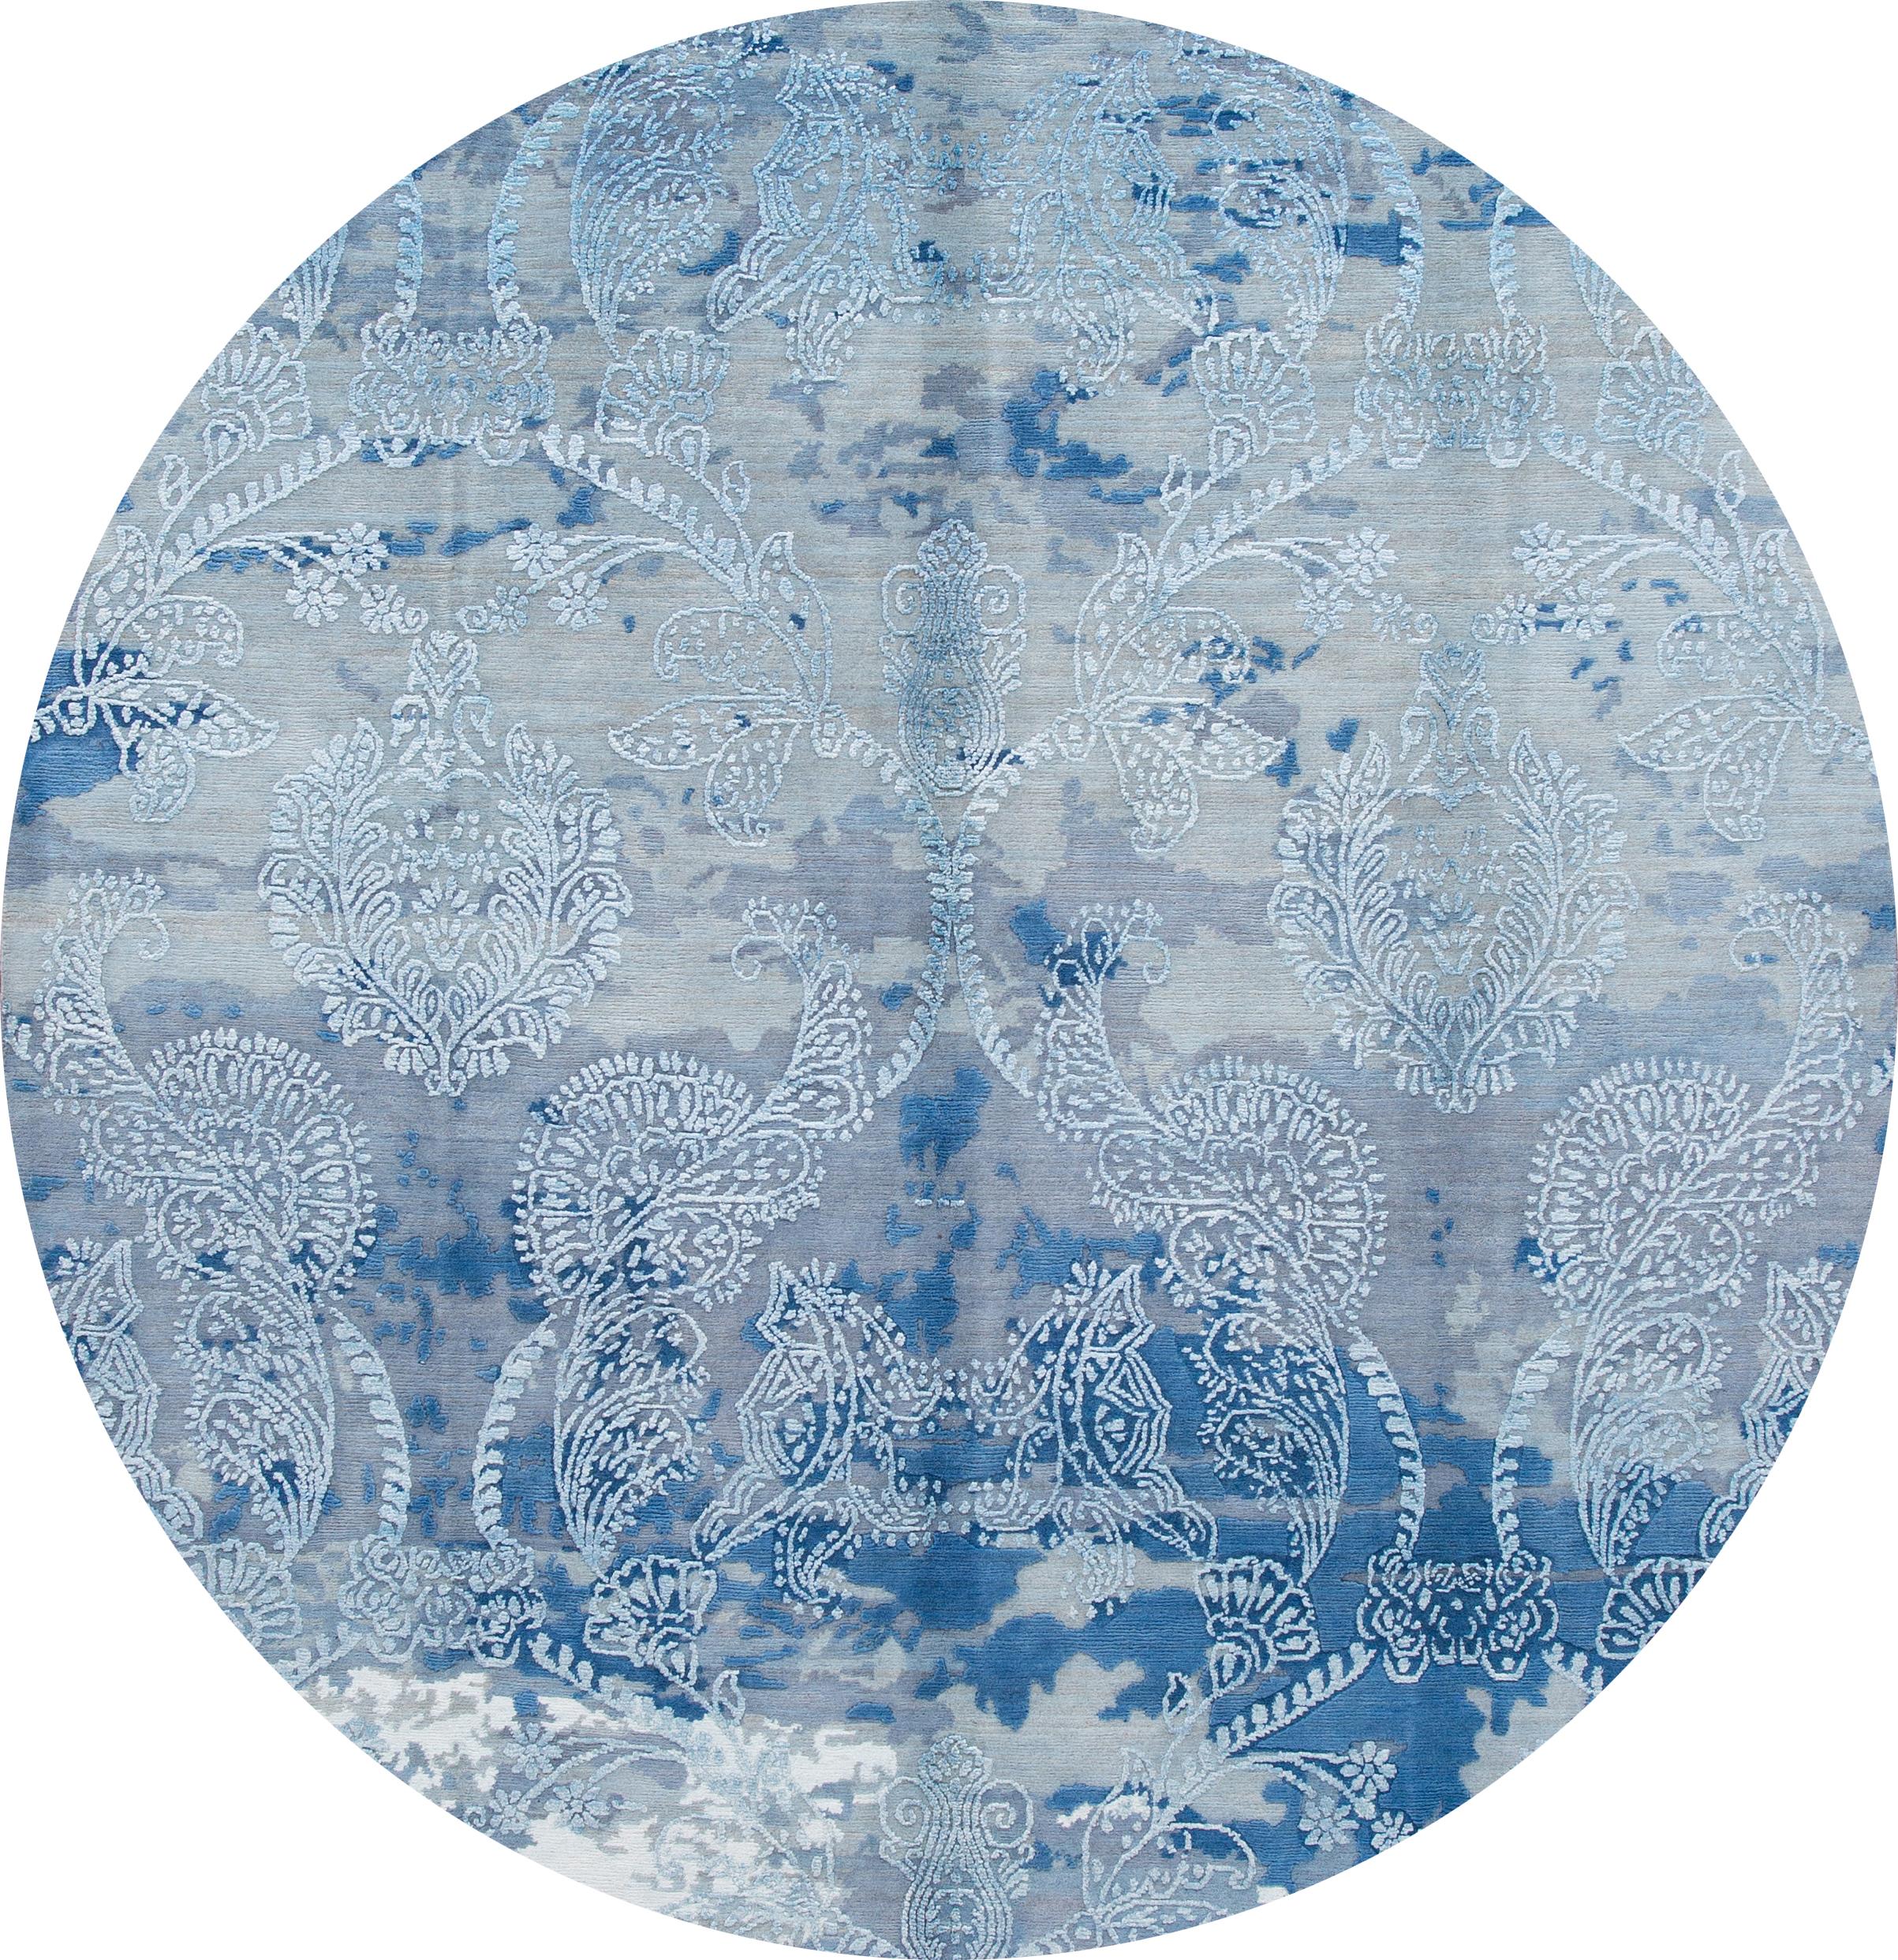 Un magnifique tapis indien moderne noué à la main, avec un champ bleu, des accents bleu foncé, gris et ivoire dans un design floral all-over.
Ce tapis mesure 8' x 10'.